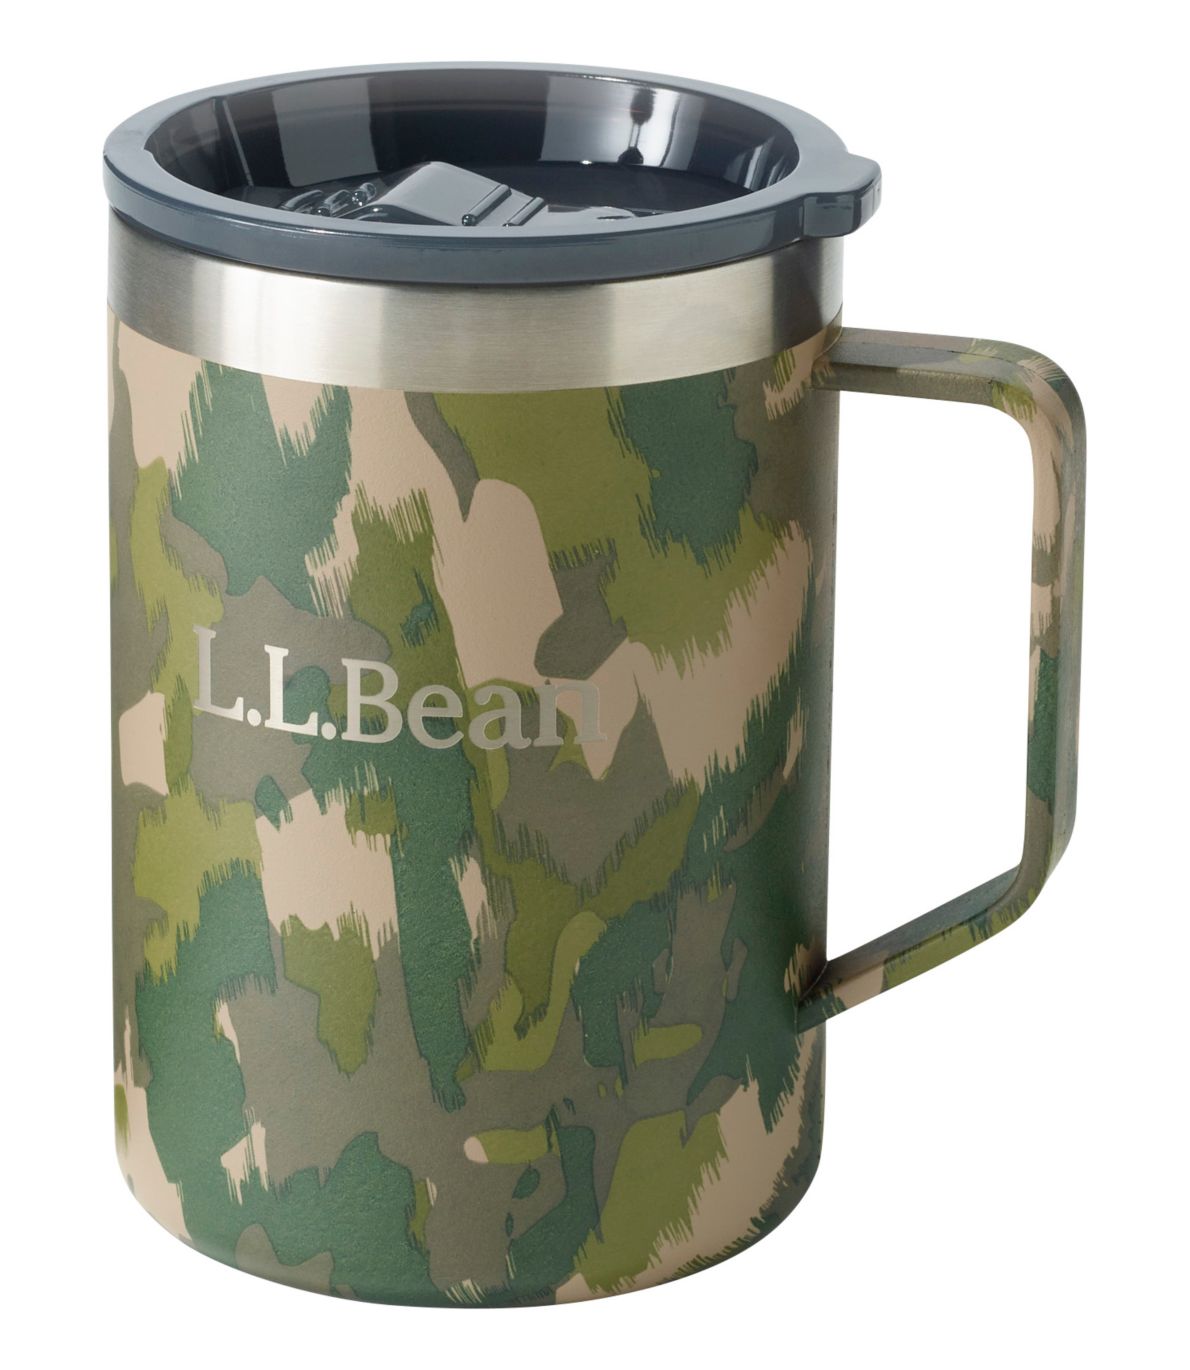 L.L.Bean Insulated Camp Mug, Print